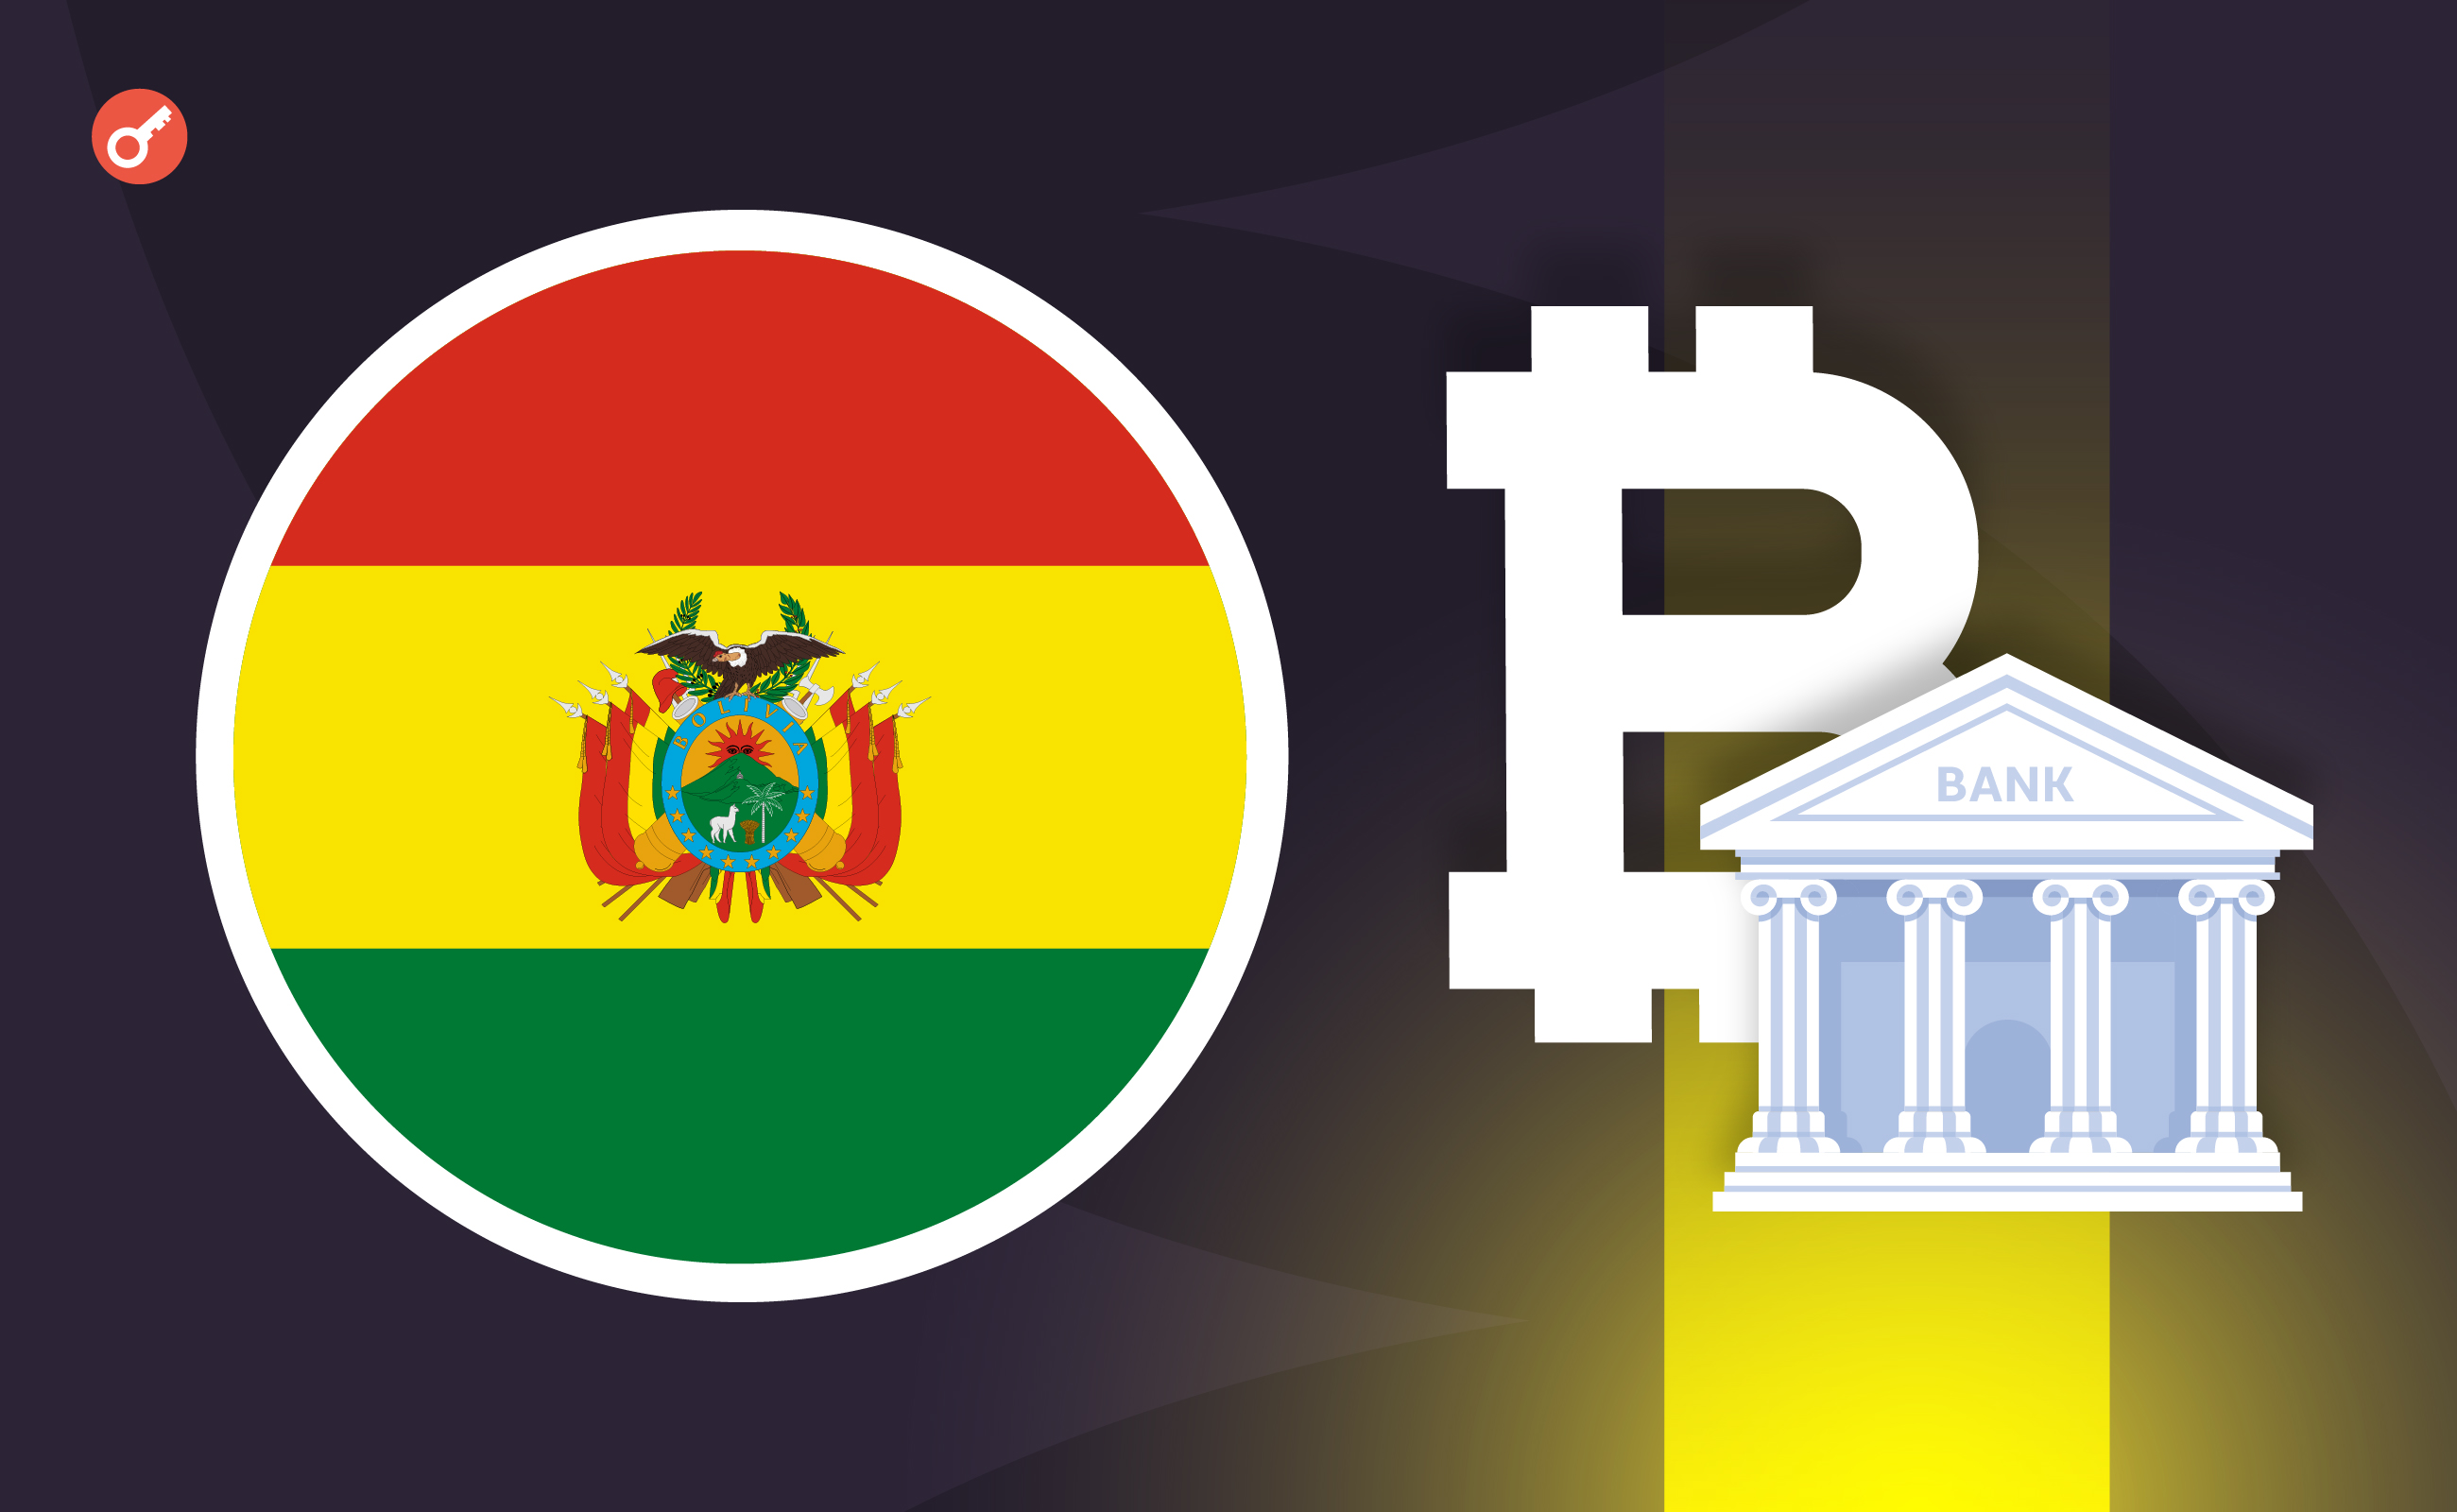 В Боливии сняли запрет на транзакции с криптовалютами. Заглавный коллаж новости.